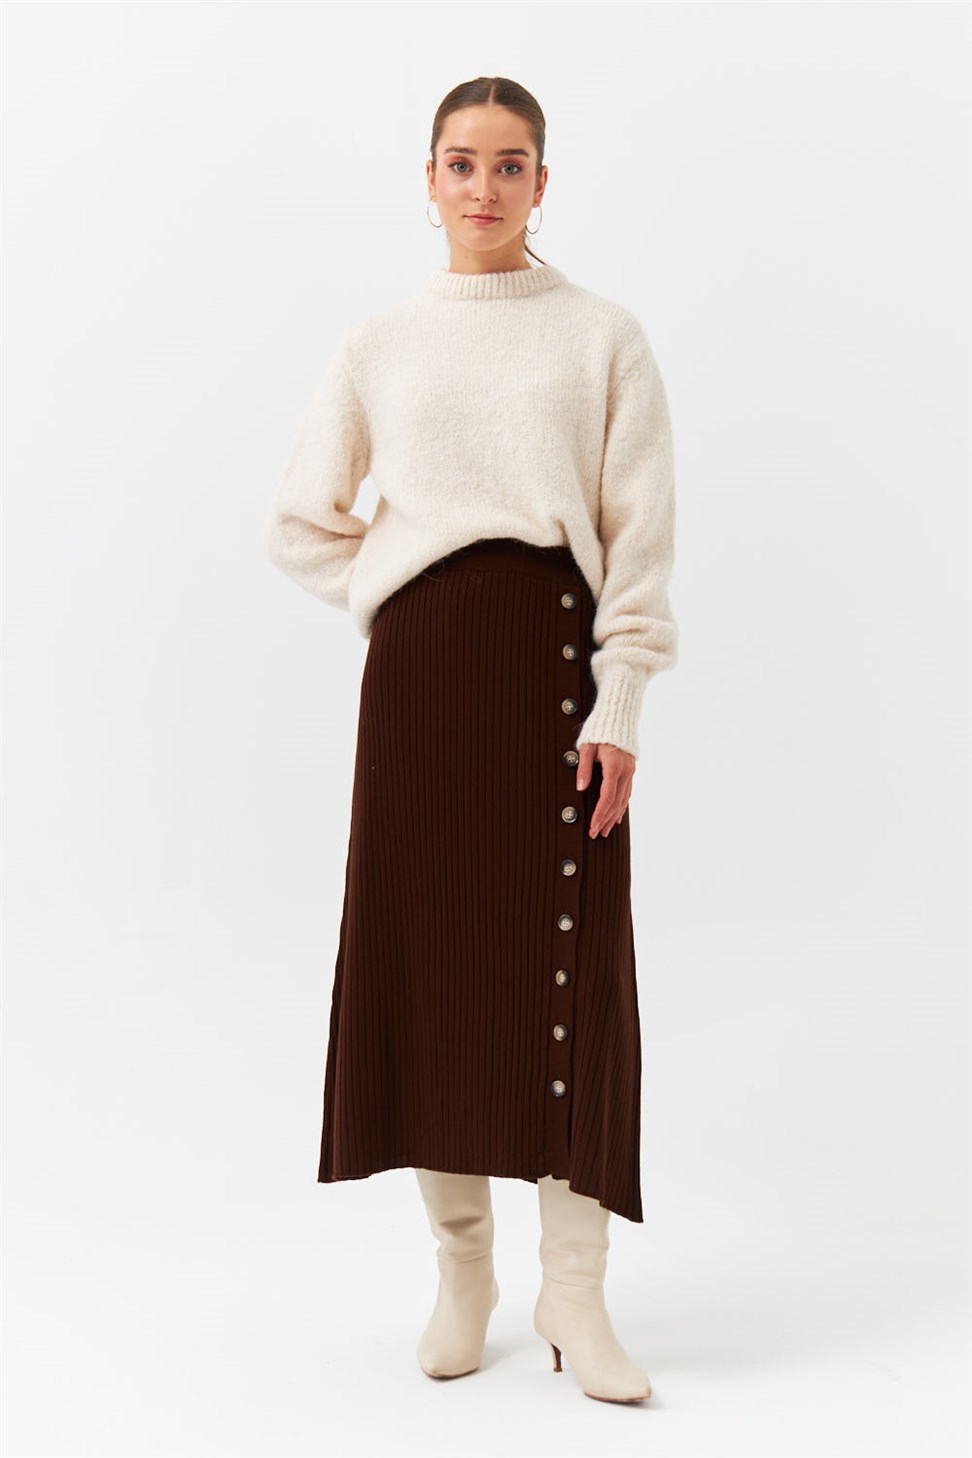 Modest Long Button Detailed Brown Knitwear Skirt